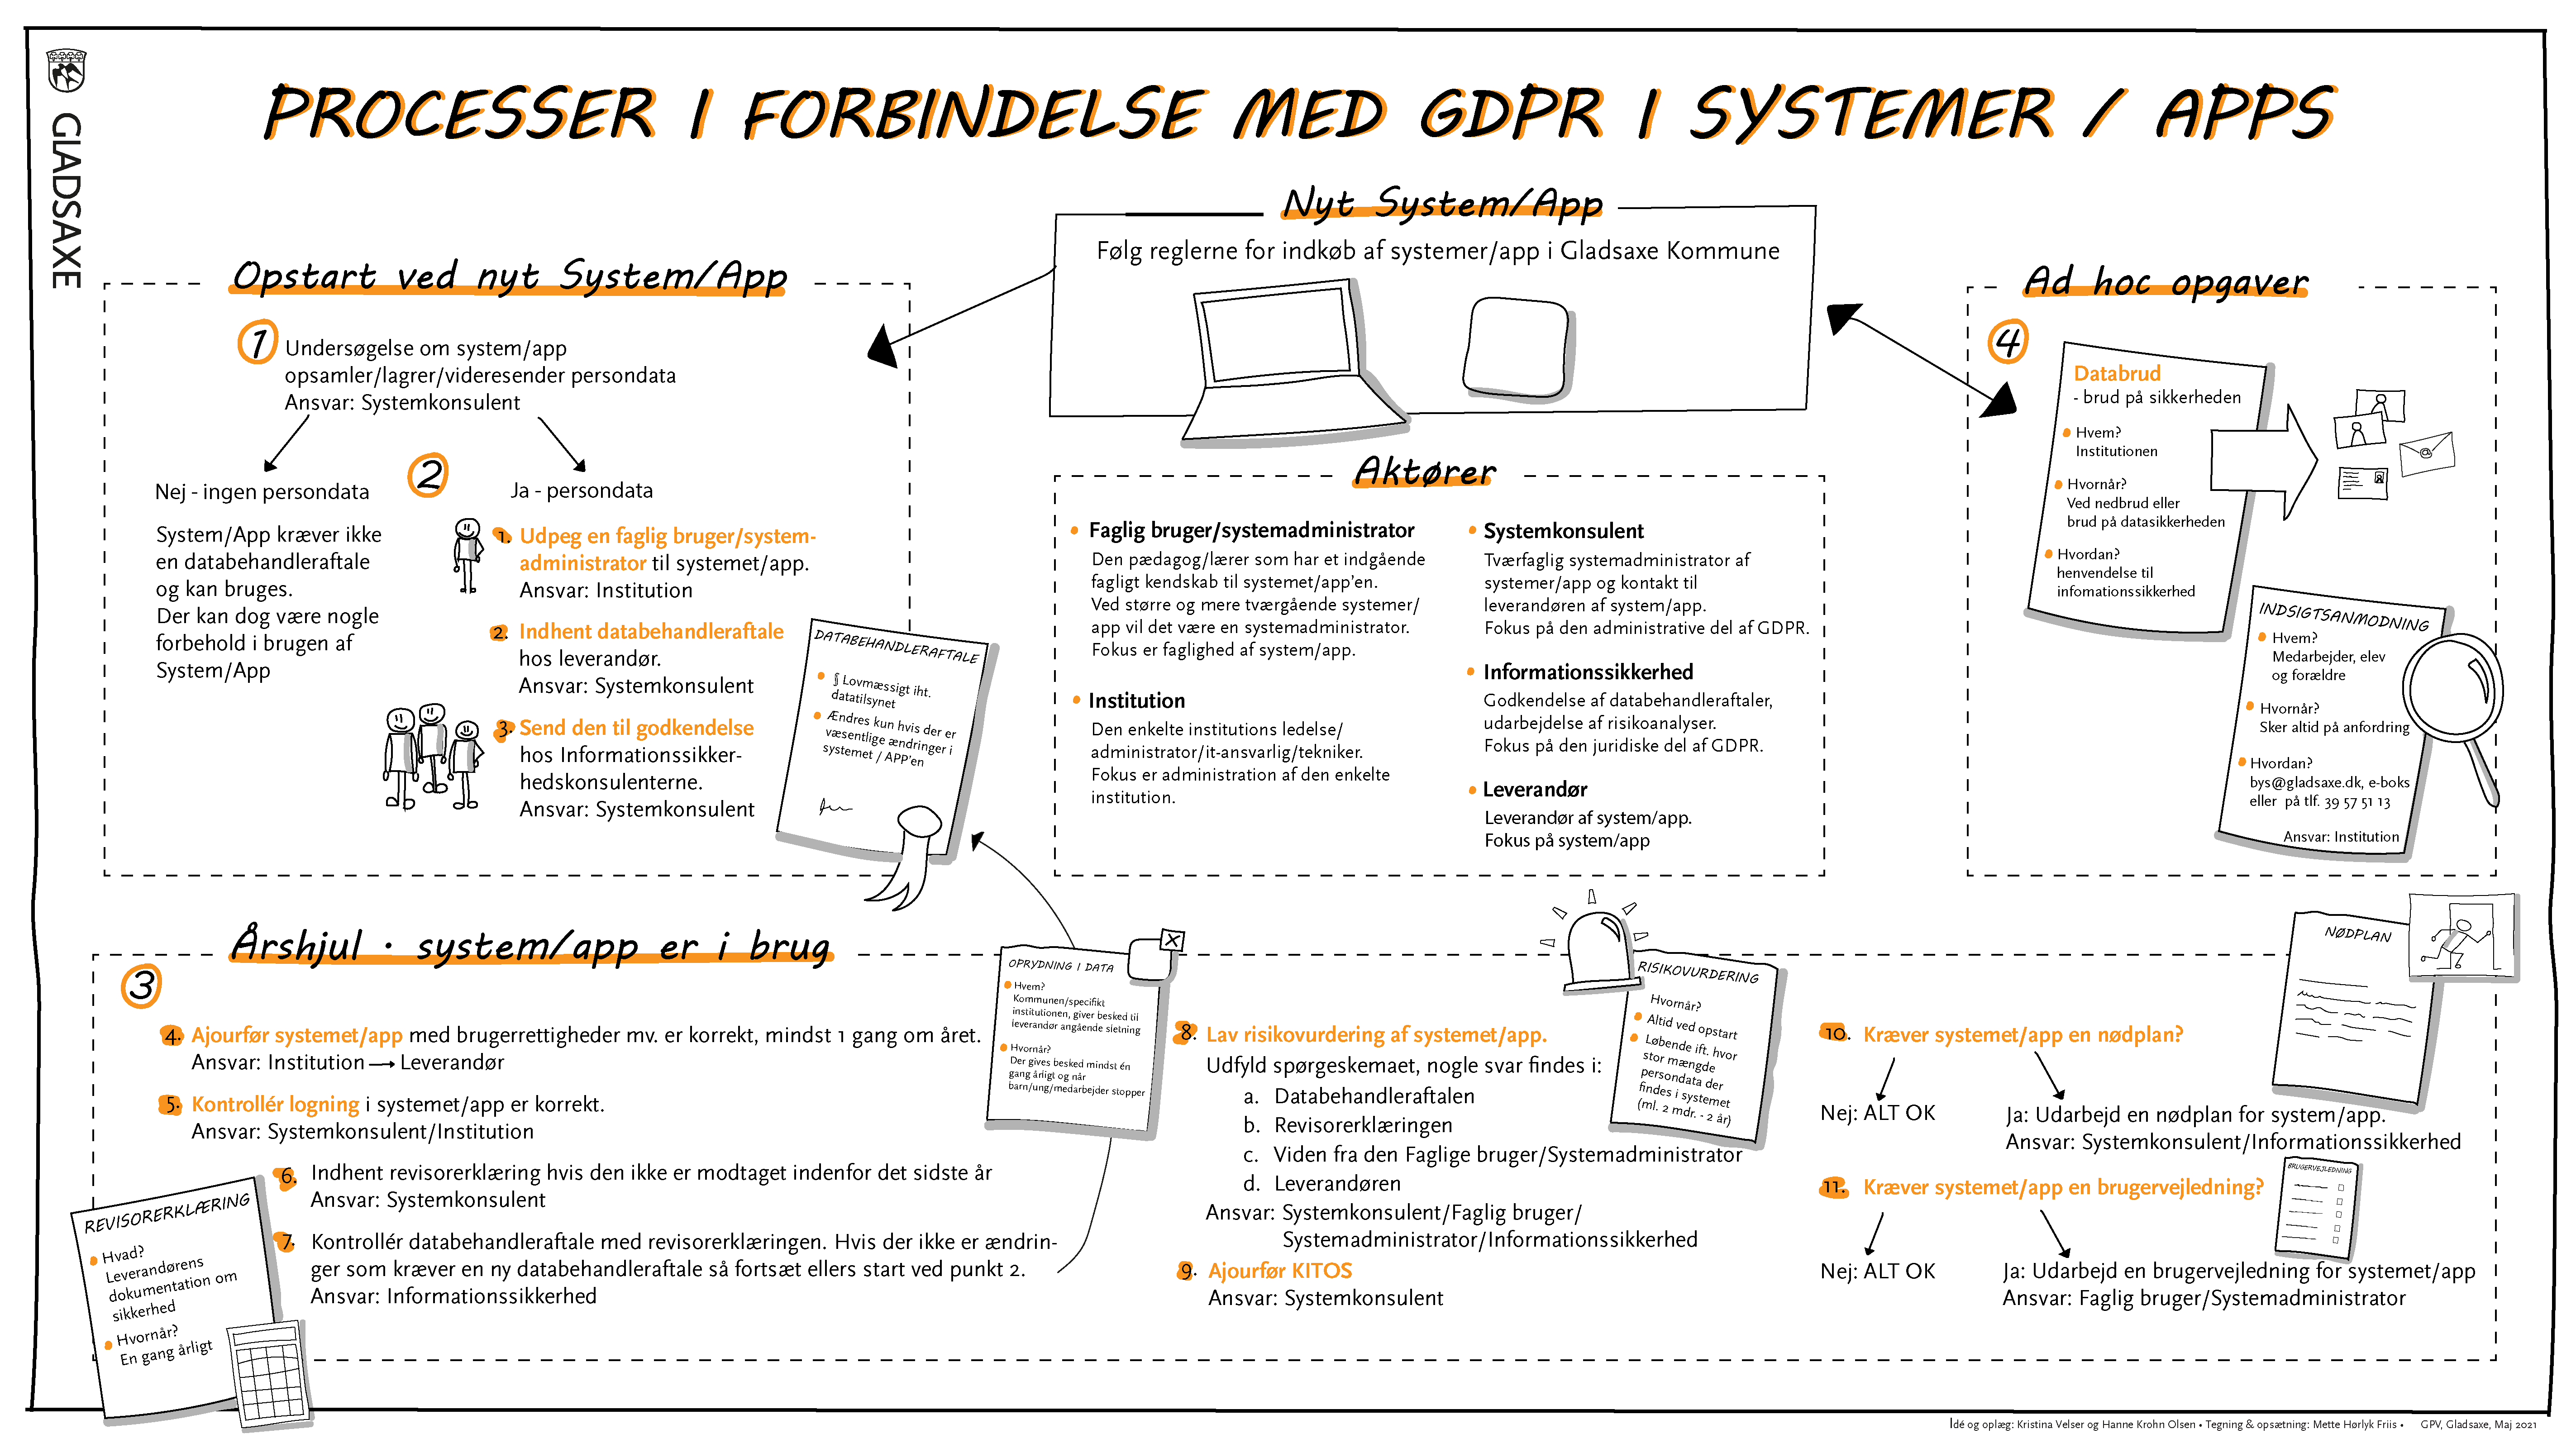 GPVs oversigt over GDPR-processer i systemer og apps